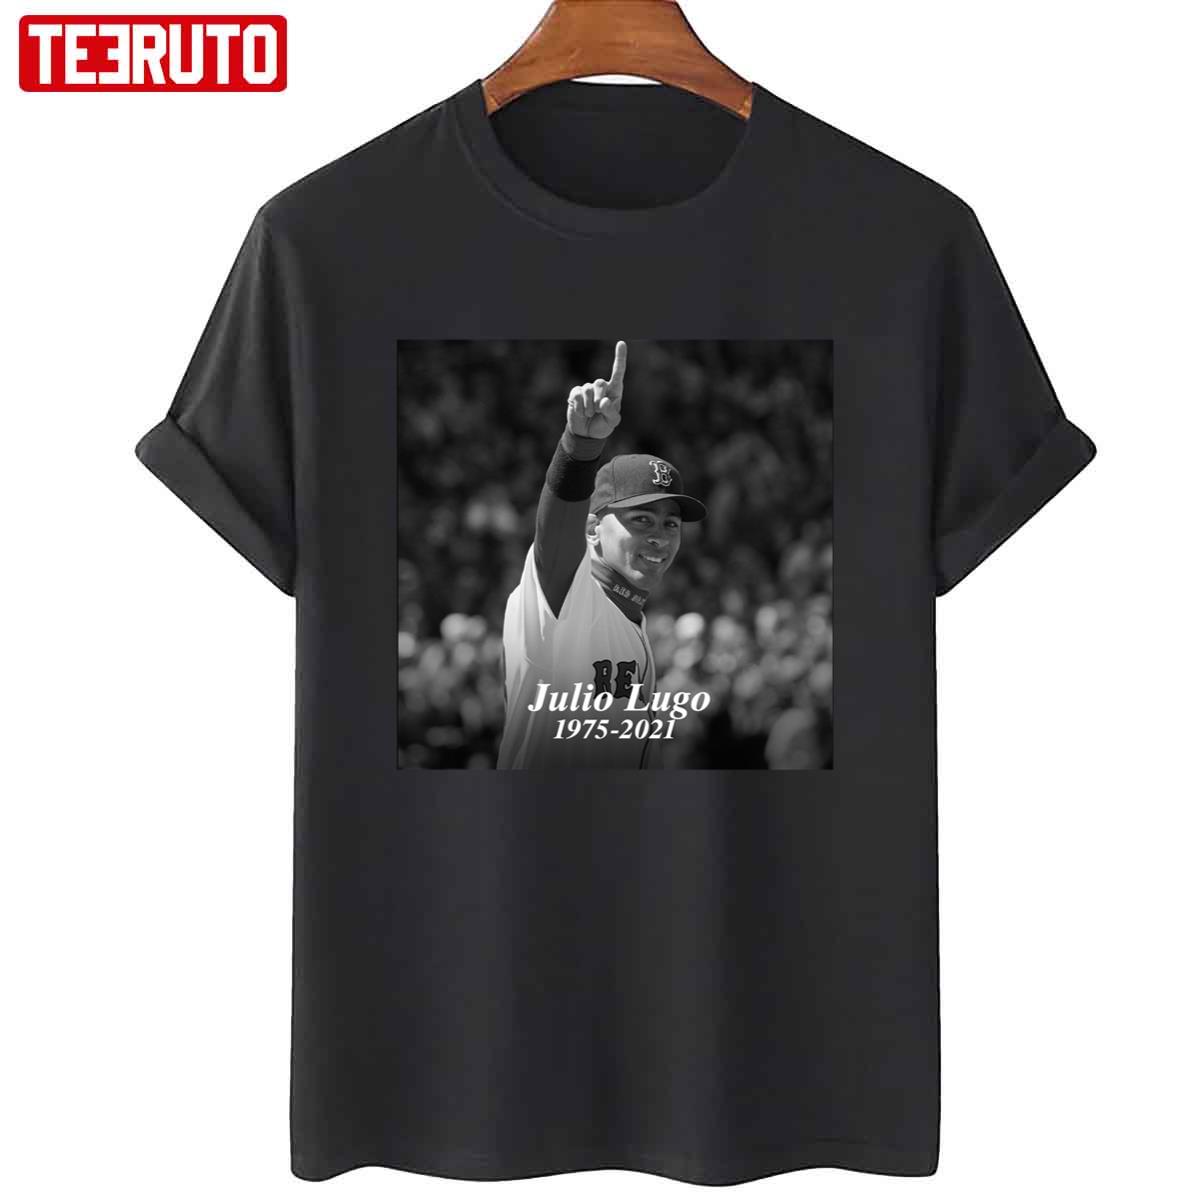 Rip Julio Lugo 1975 2021 Unisex T-Shirt